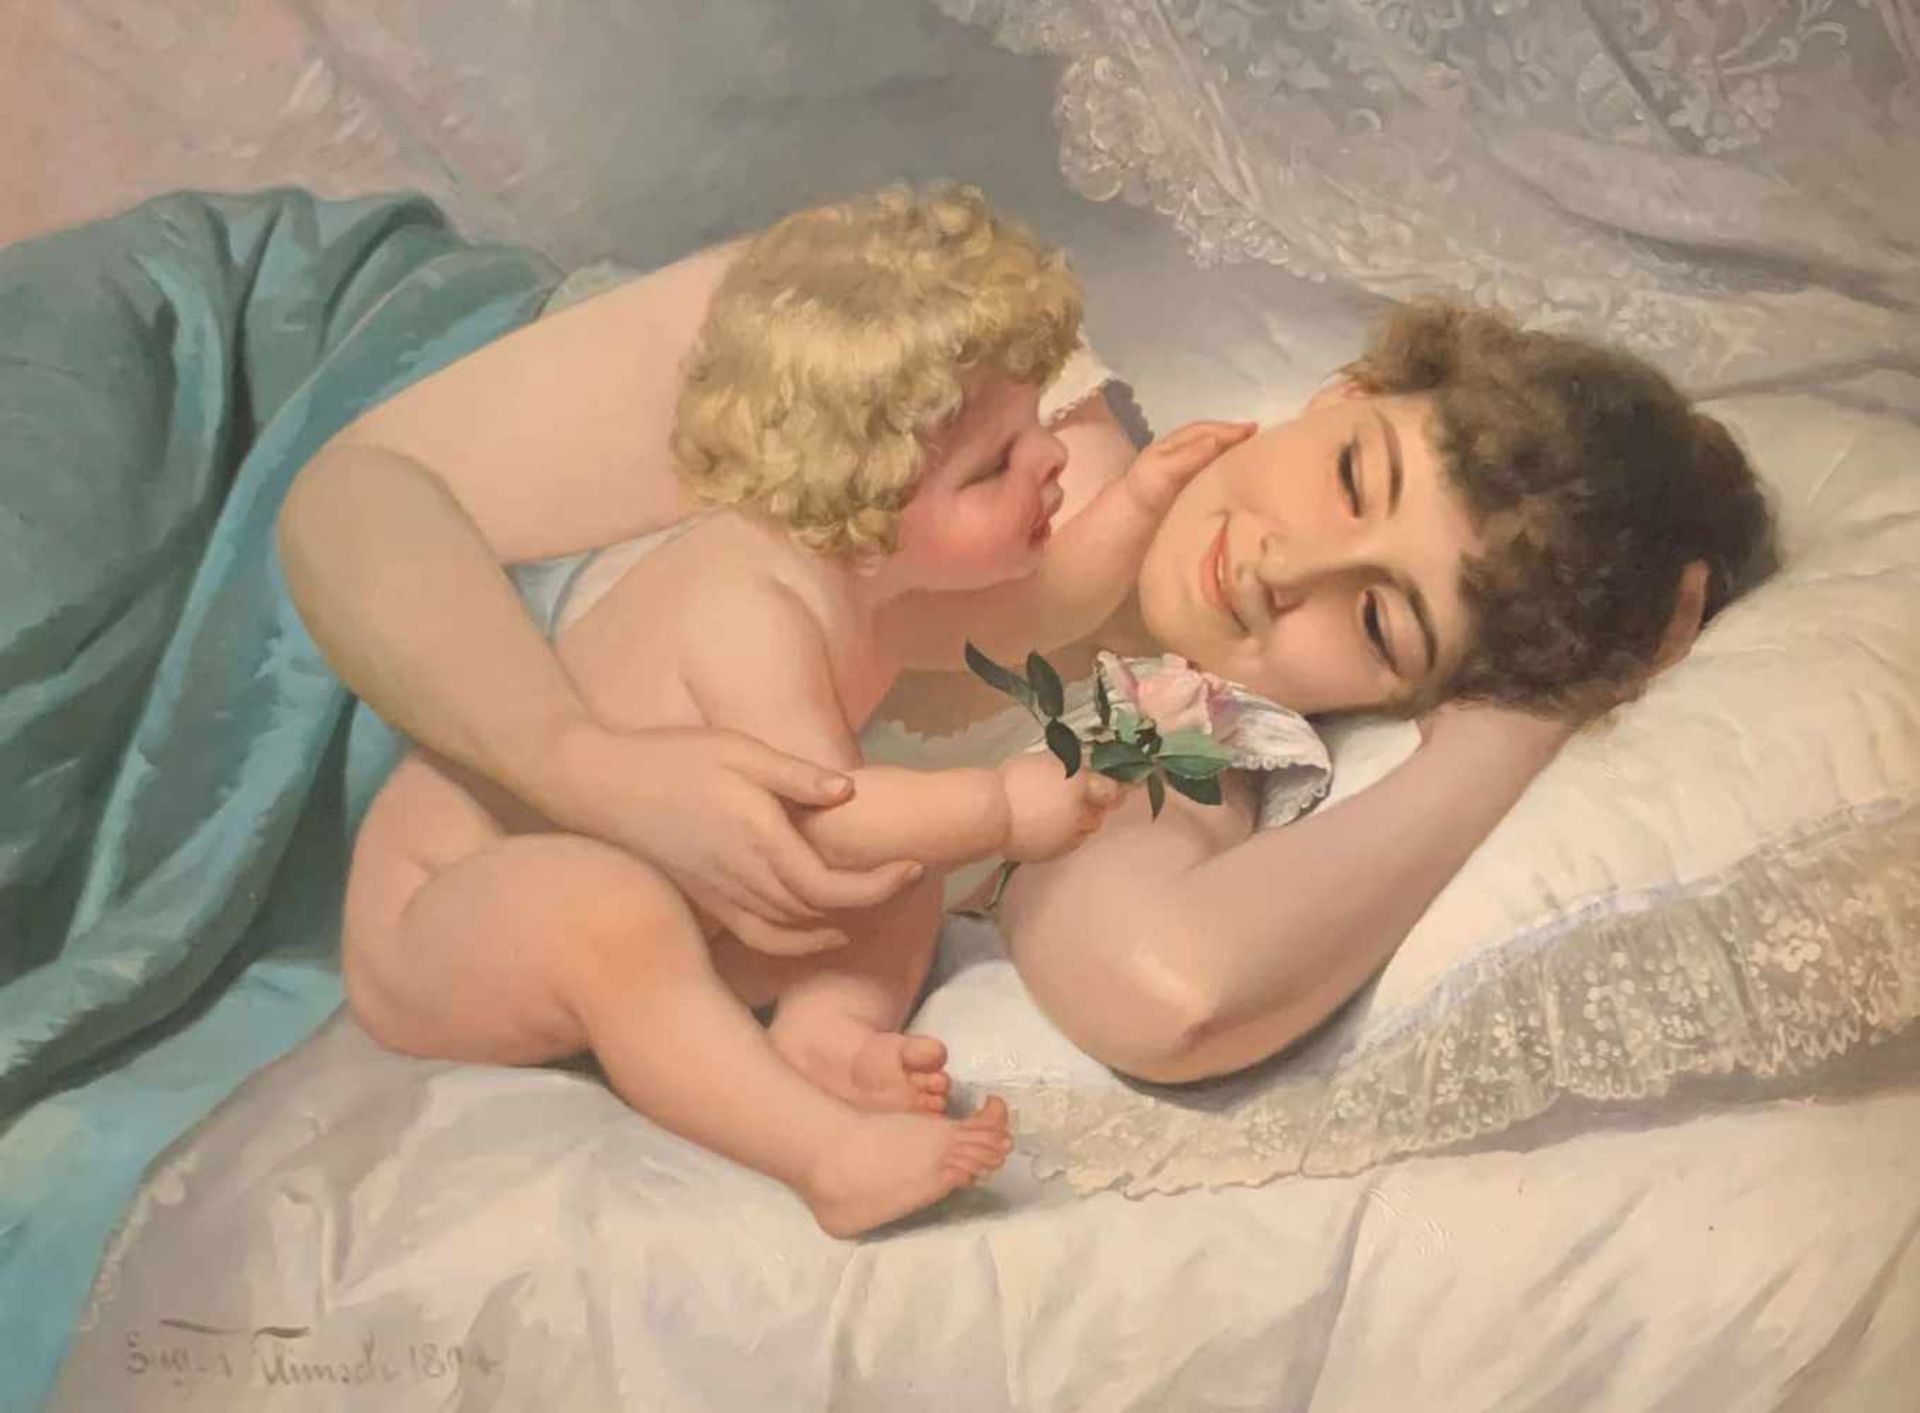 Eugen Johann Georg KLIMSCH (1839-1896), Mutter mit Kind, einander zärtlich berührend und liebevoll